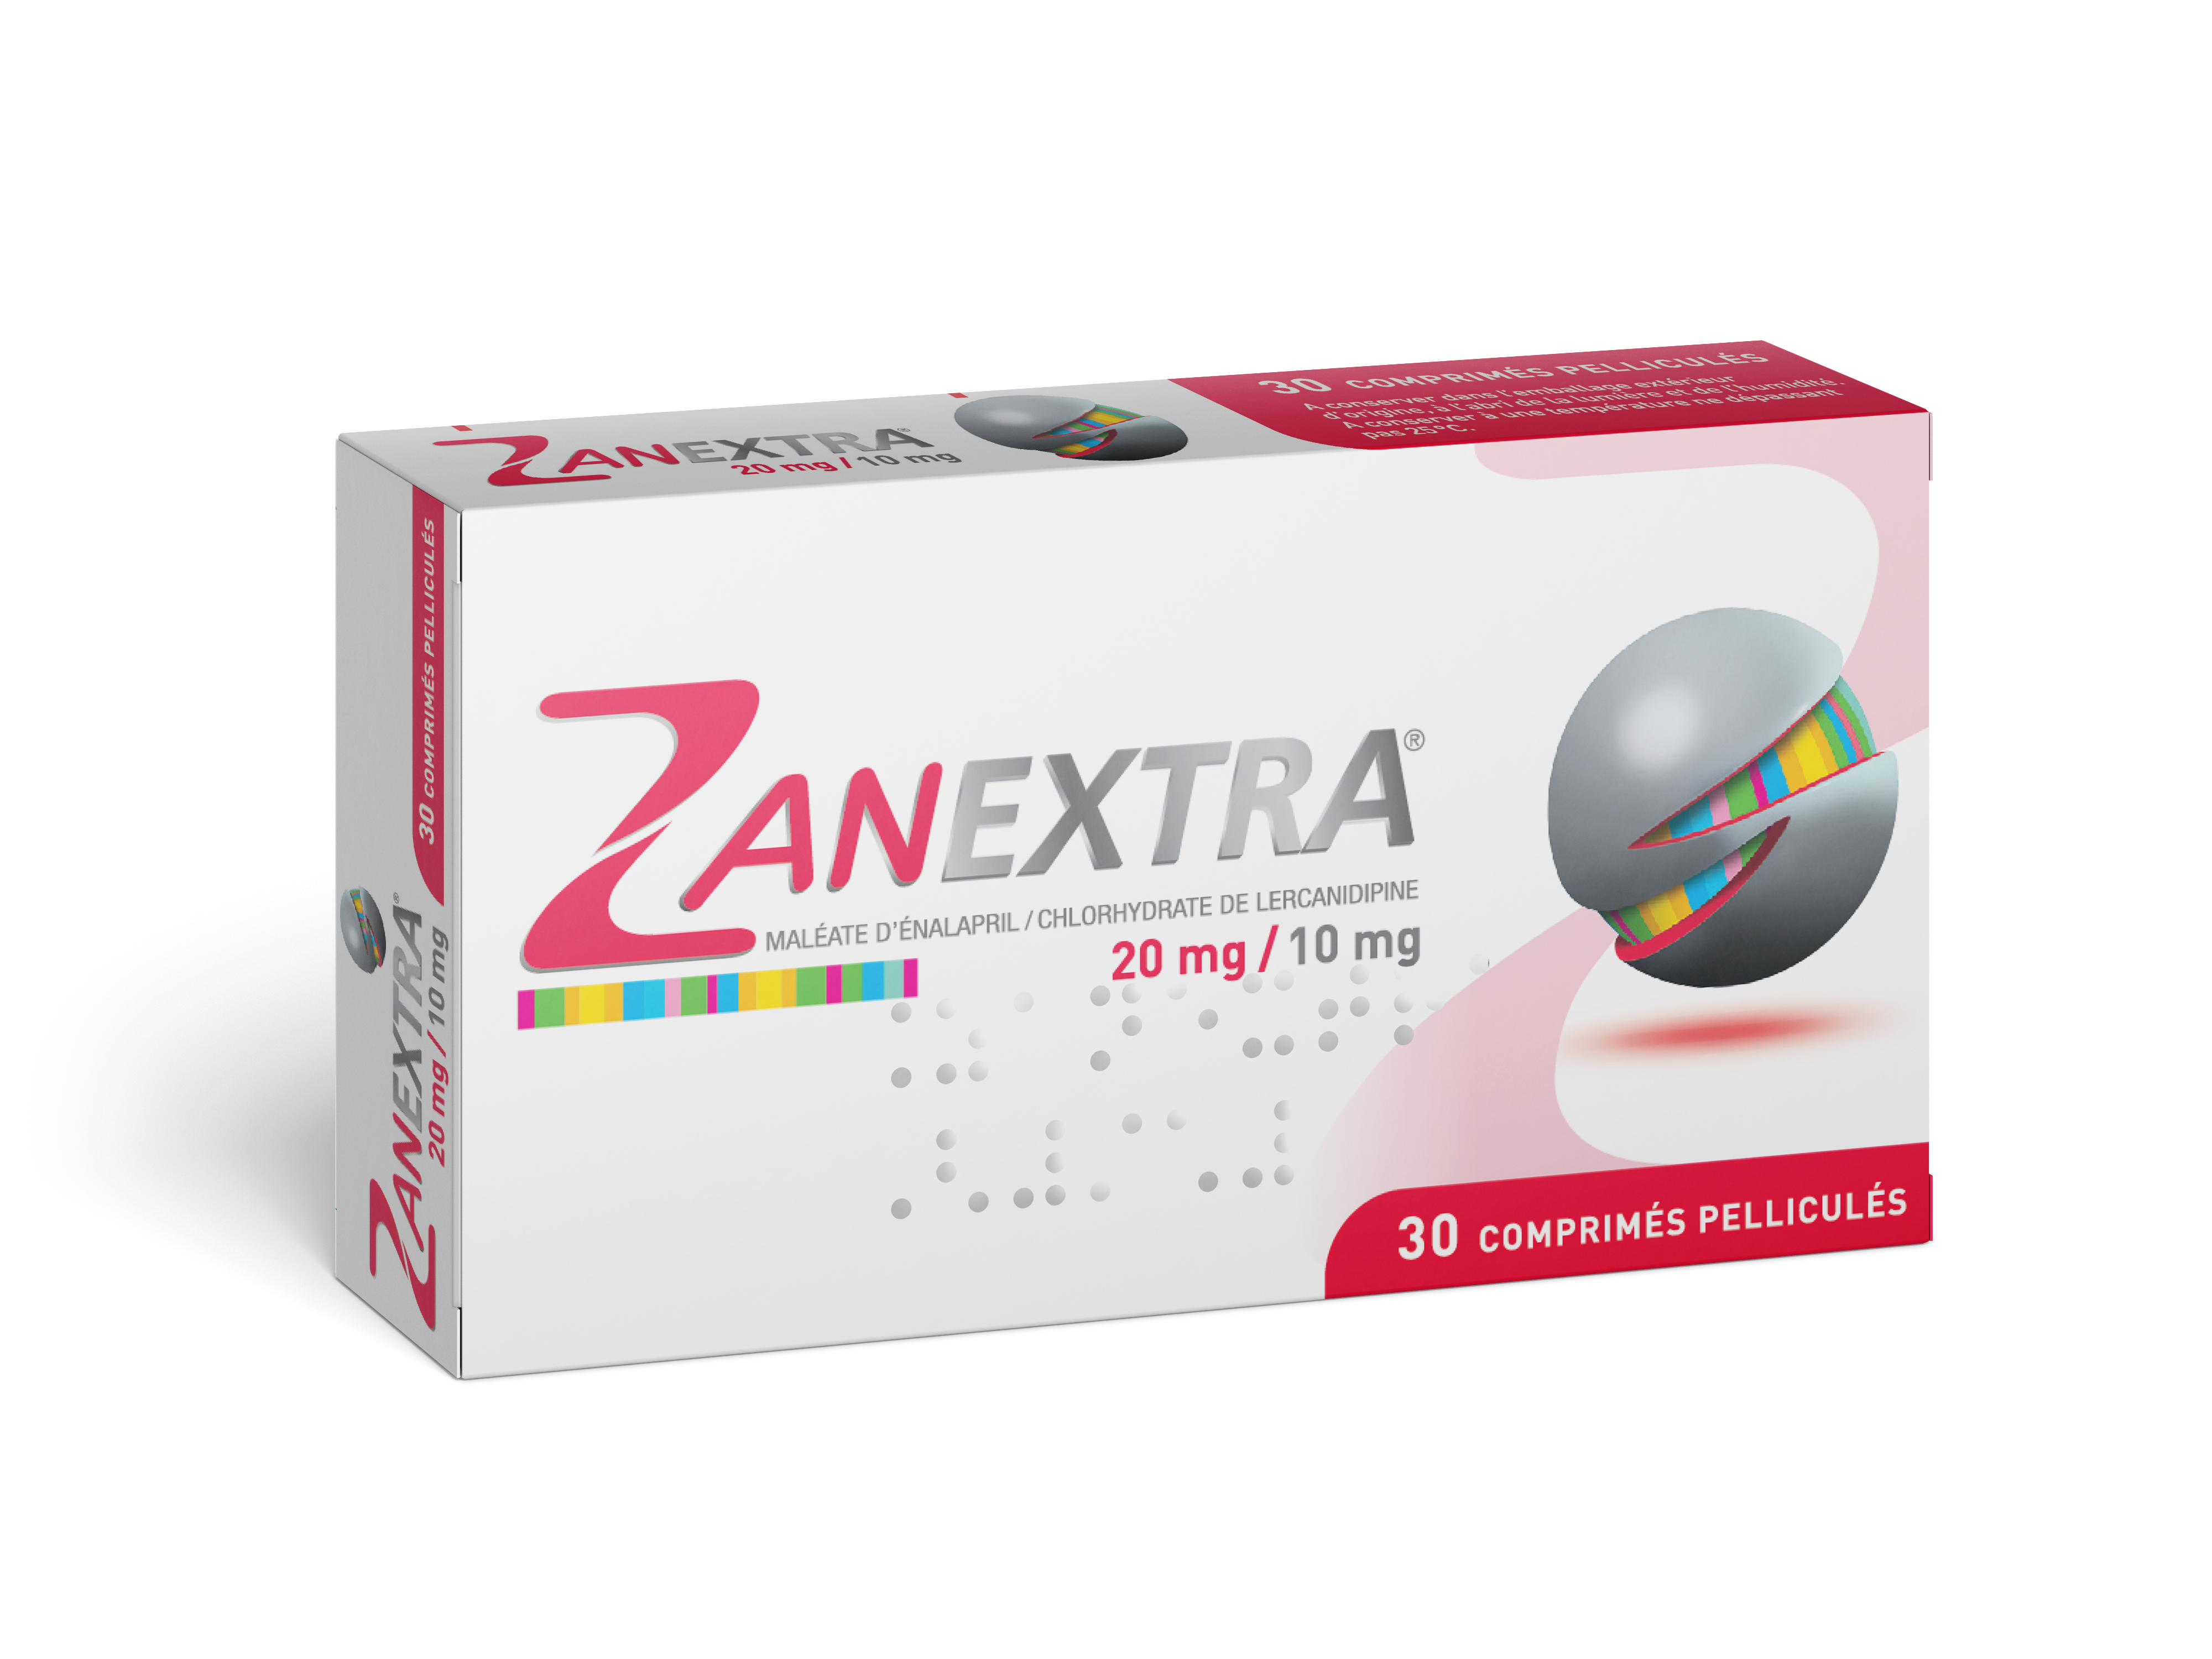 Zanextra 20mg/ 10mg